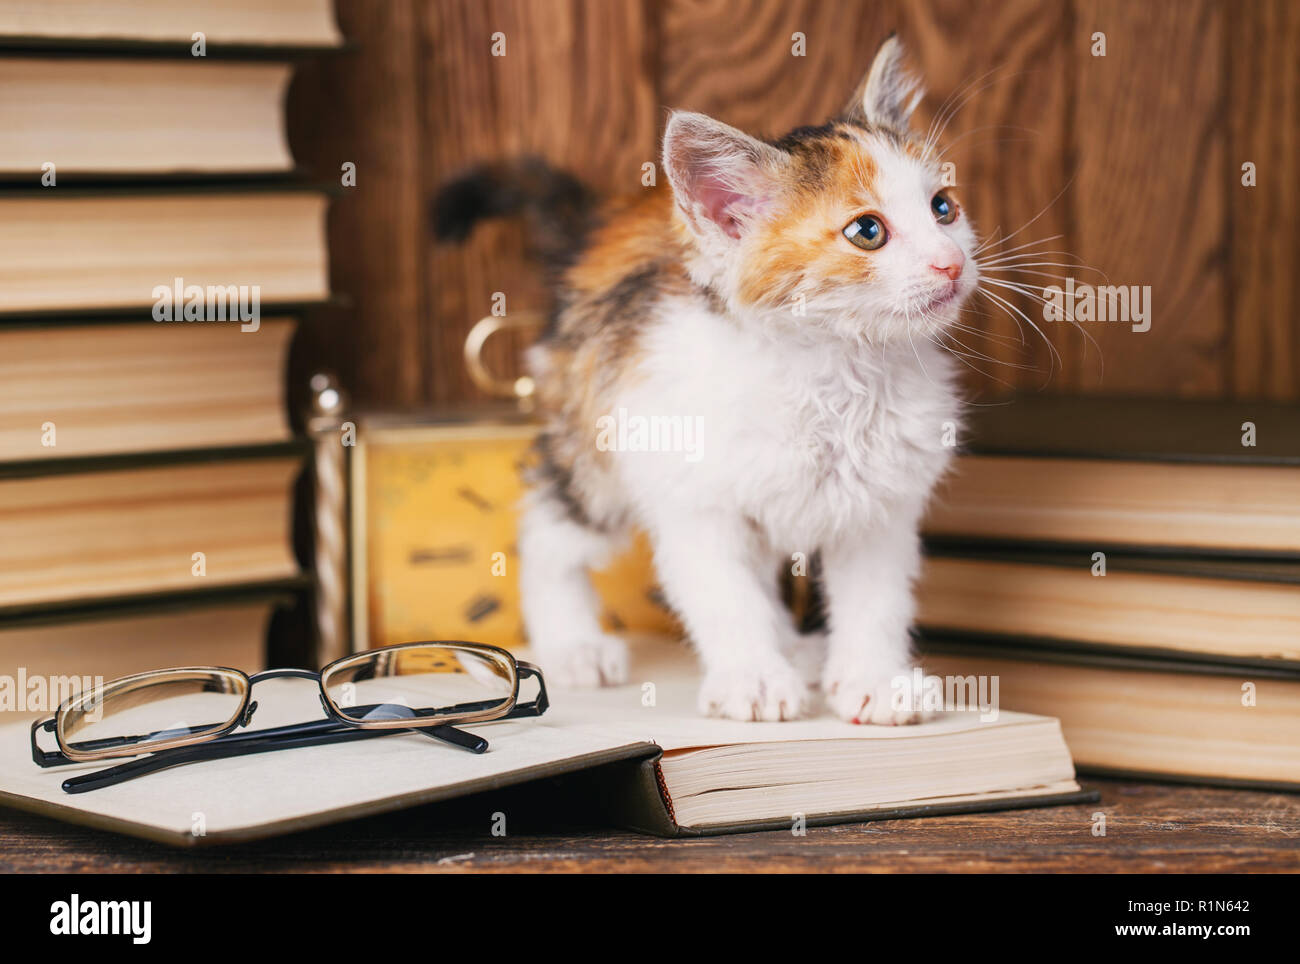 Il gatto si erge sul libro e guarda al lato destro Foto Stock